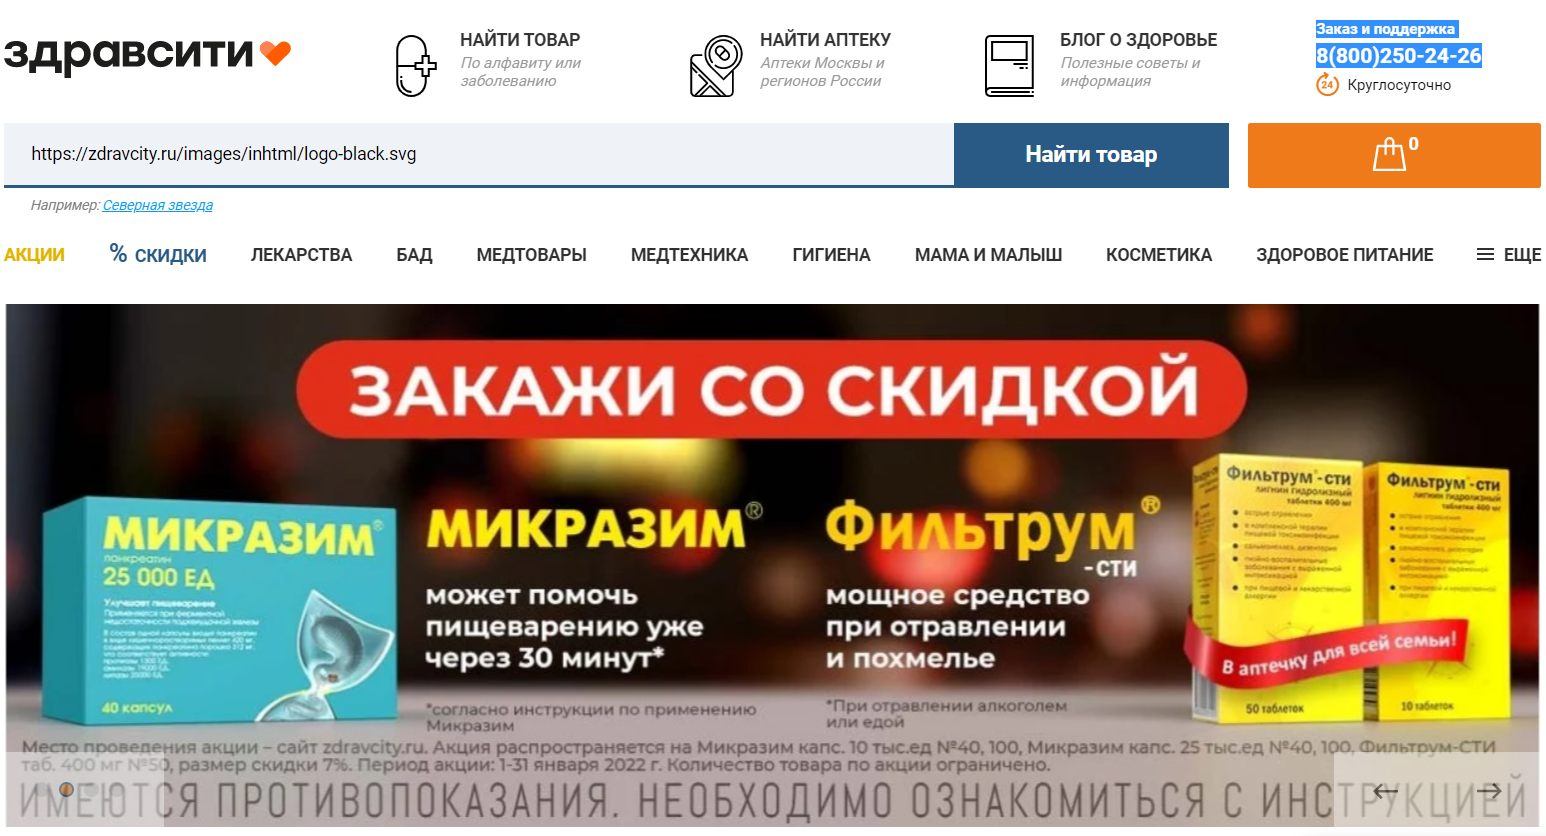 Здравсити официальный сайт интернет-аптеки